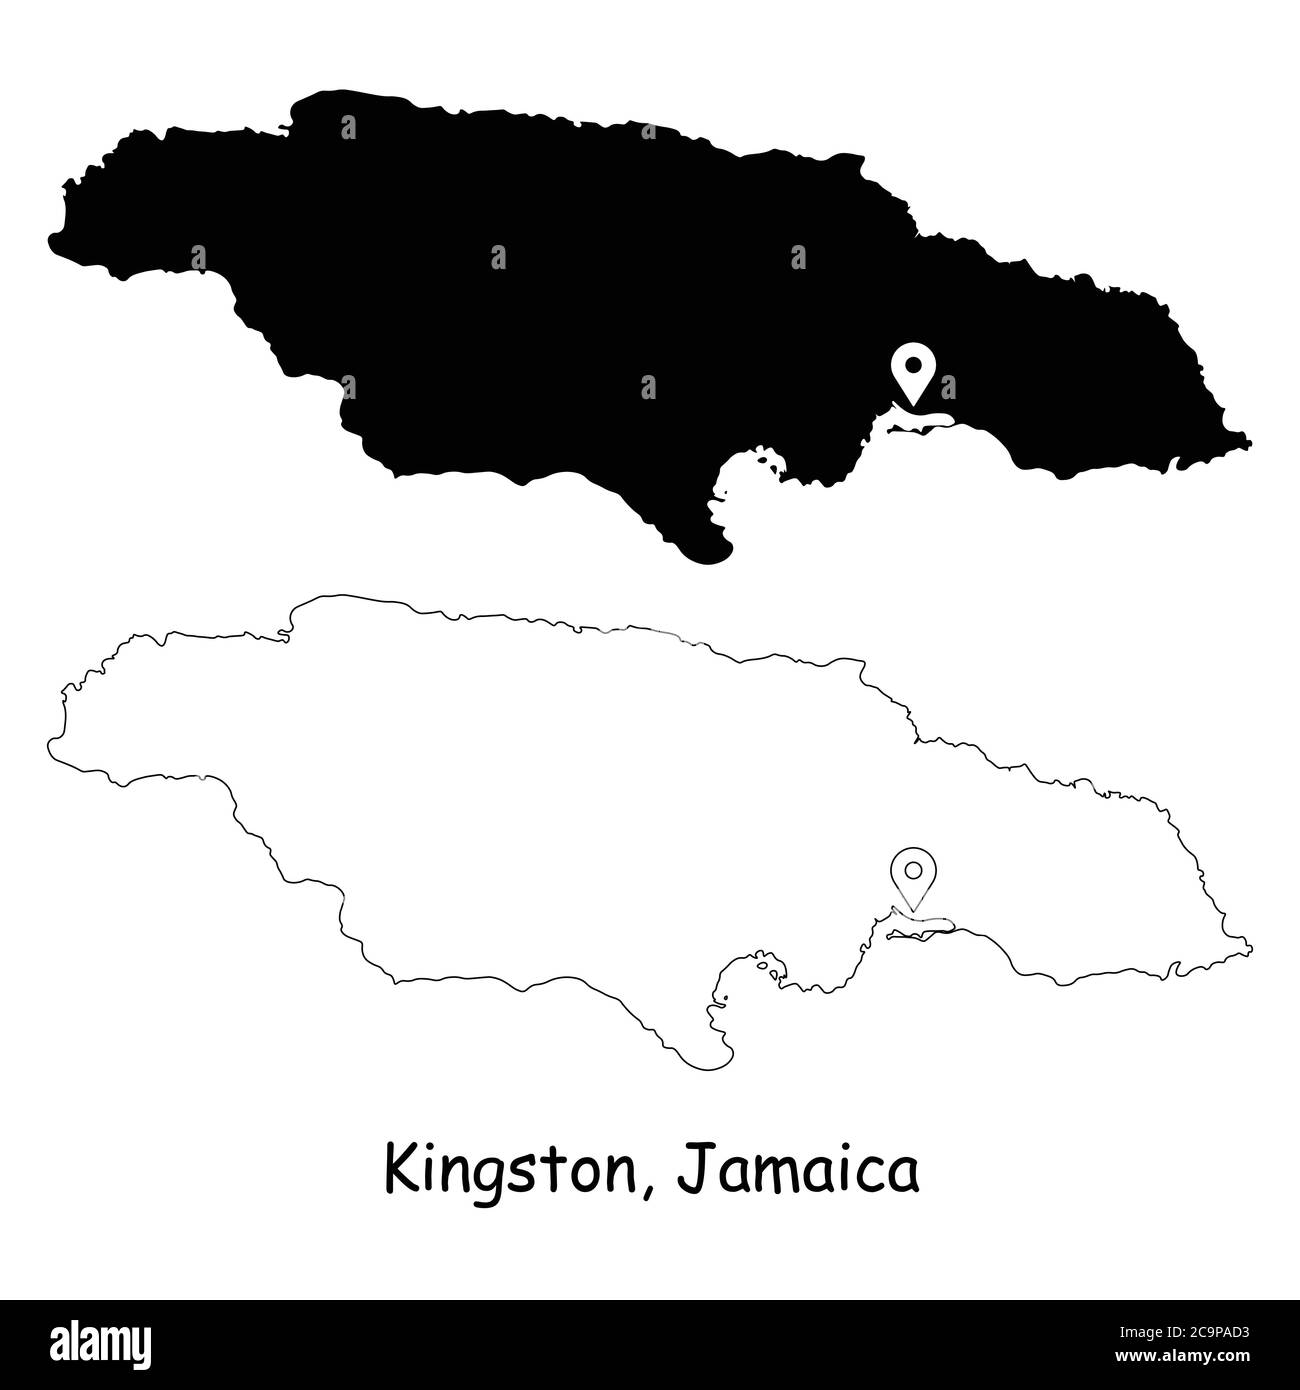 Kingston Jamaïque. Carte détaillée du pays avec broche d'emplacement sur Capital City. Cartes silhouettes et vectorielles noires isolées sur fond blanc. Vecteur EPS Illustration de Vecteur